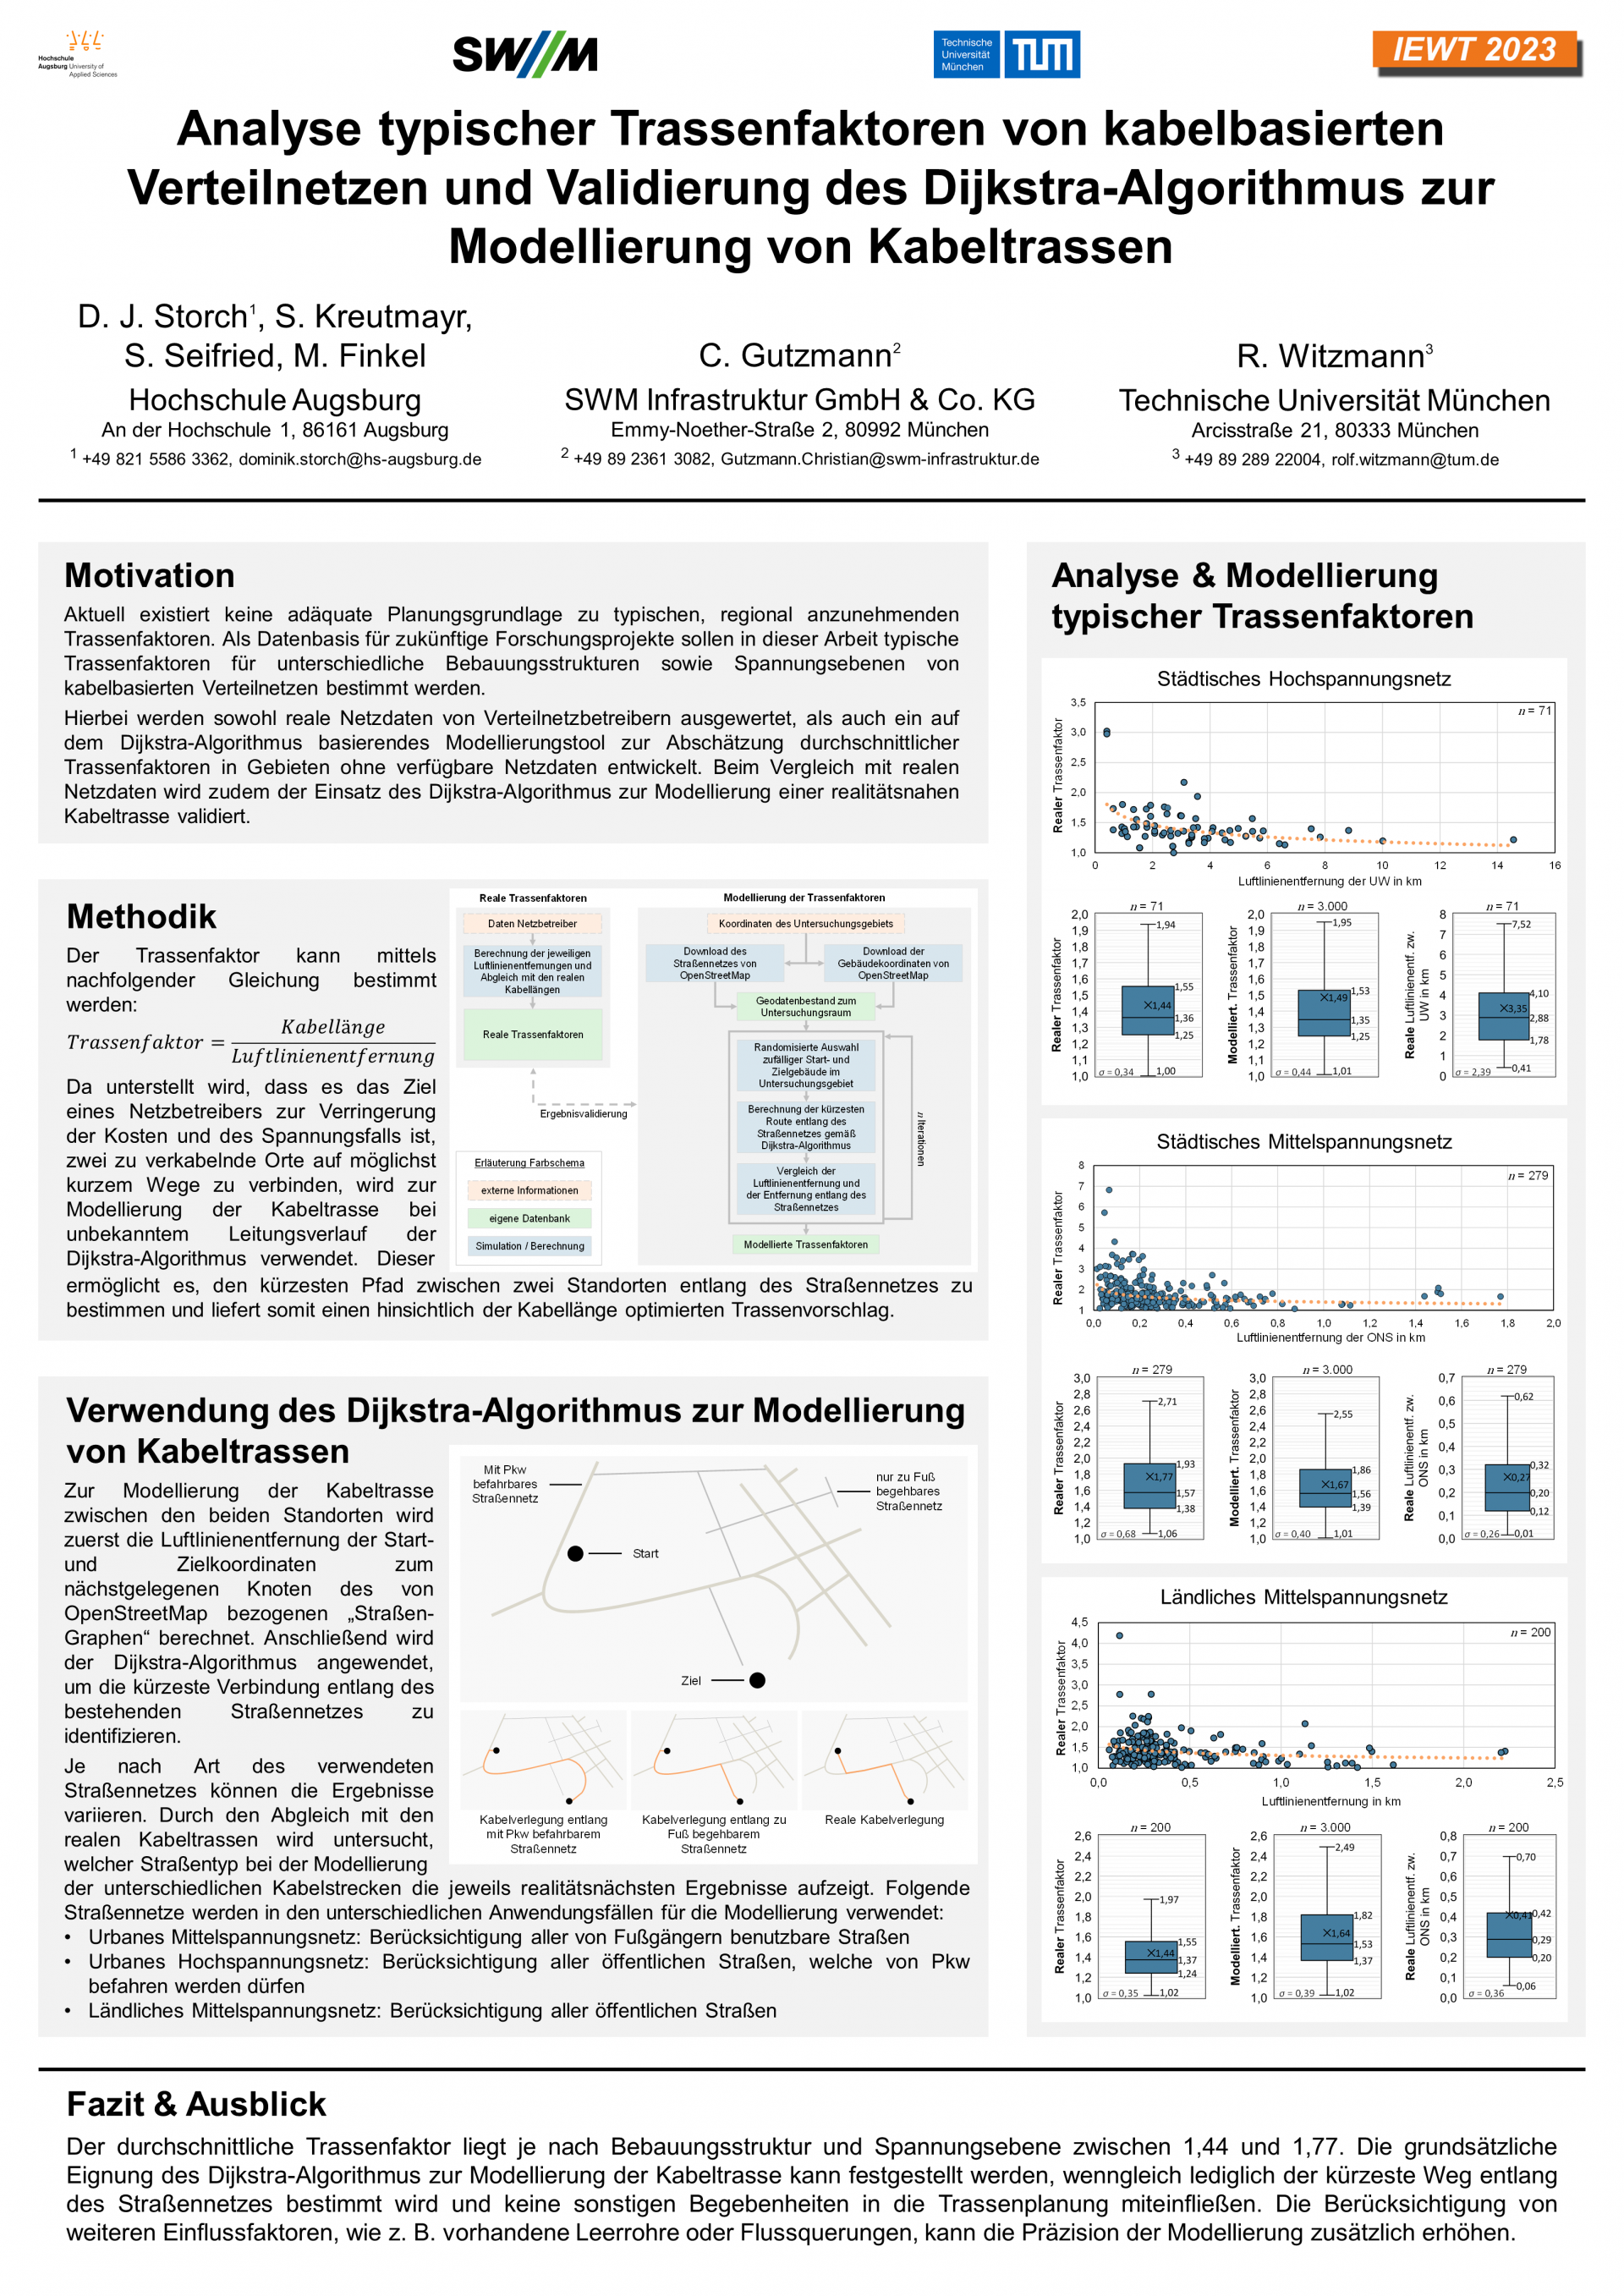 Poster: Analyse typischer Trassenfaktoren von kabelbasierten Verteilnetzen und Validierung des Dijkstra-Algorithmus zur Modellierung von Kabeltrassen